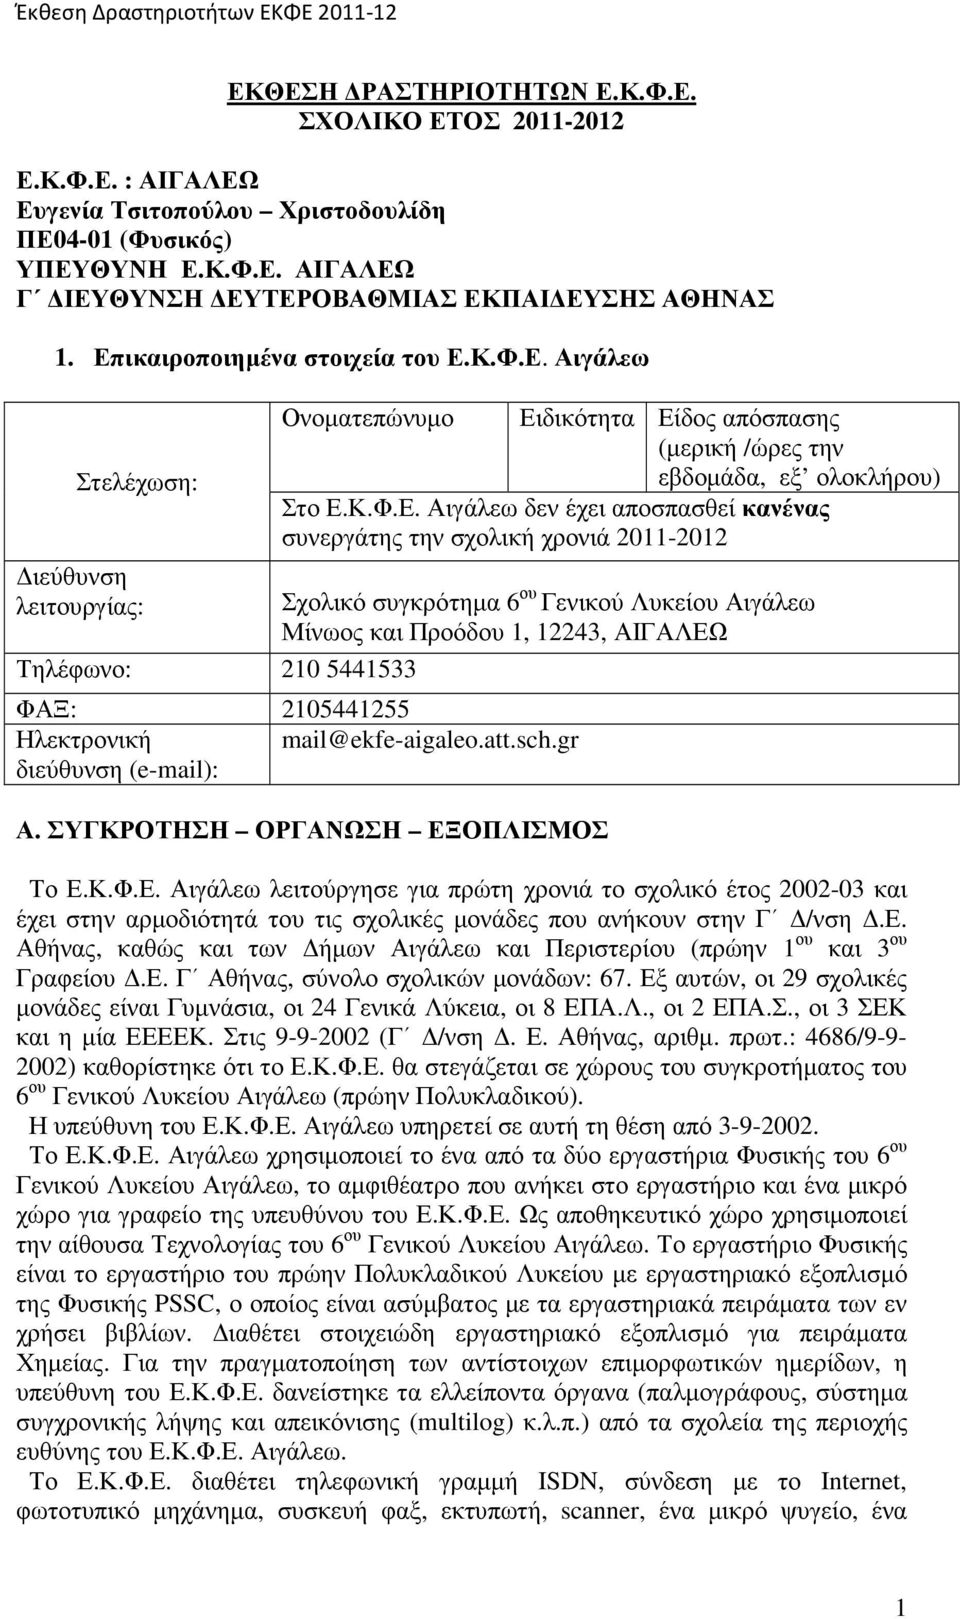 συνεργάτης την σχολική χρονιά 2011-2012 Σχολικό συγκρότηµα 6 ου Γενικού Λυκείου Μίνωος και Προόδου 1, 12243, ΑΙΓΑΛΕΩ ΦΑΞ: 2105441255 Ηλεκτρονική mail@ekfe-aigaleo.att.sch.gr διεύθυνση (e-mail): Α.